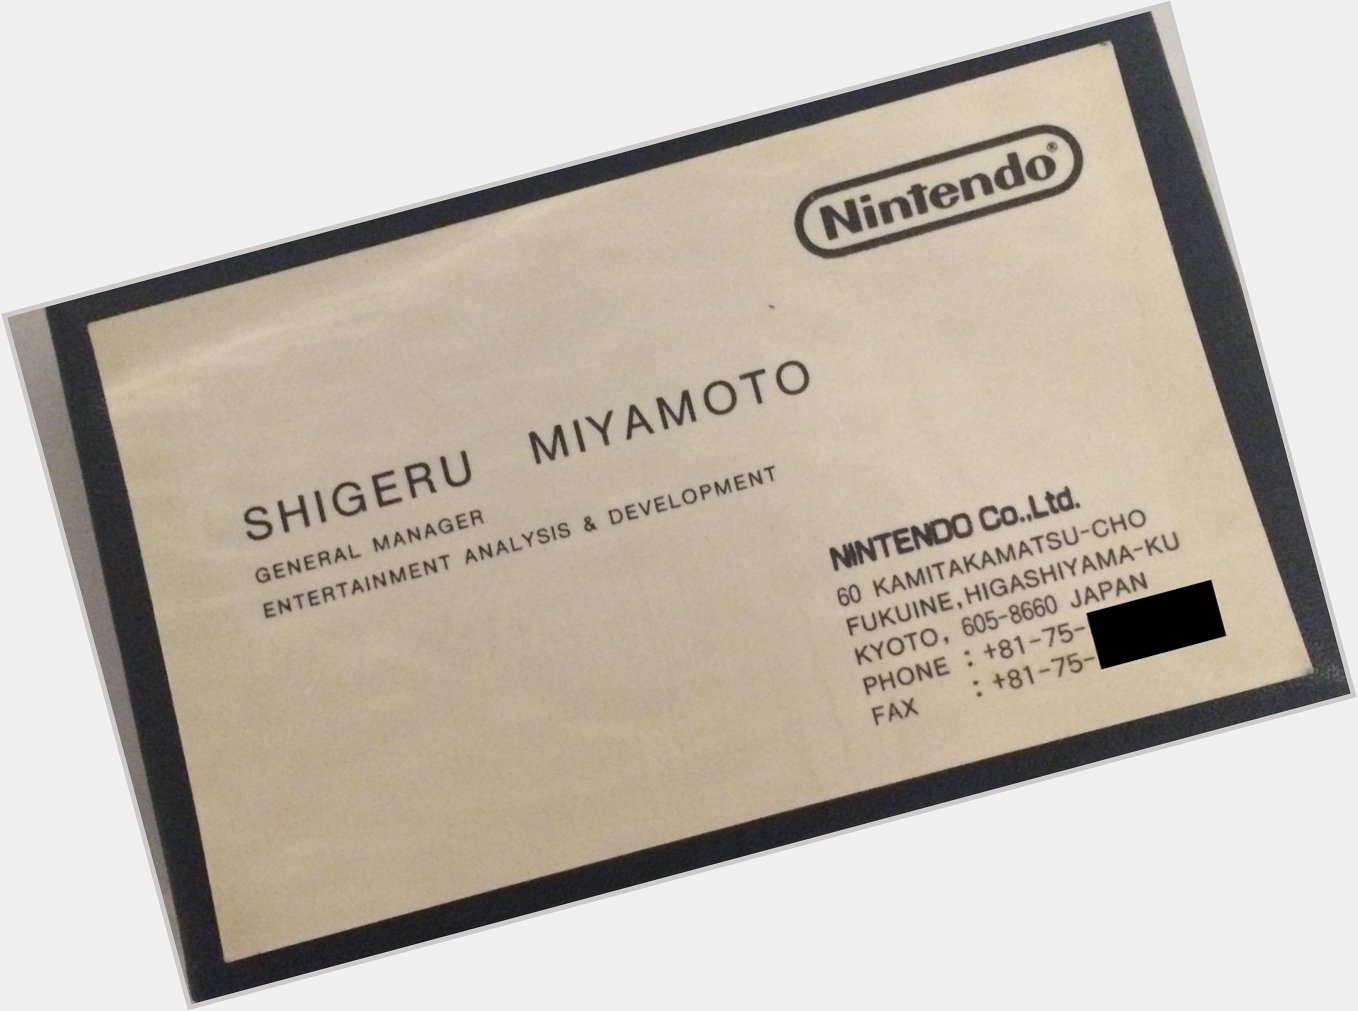 A treasured item and memory - Shigeru Miyamotos old business card! Happy Birthday, sir! :D *sheepyhugs* 